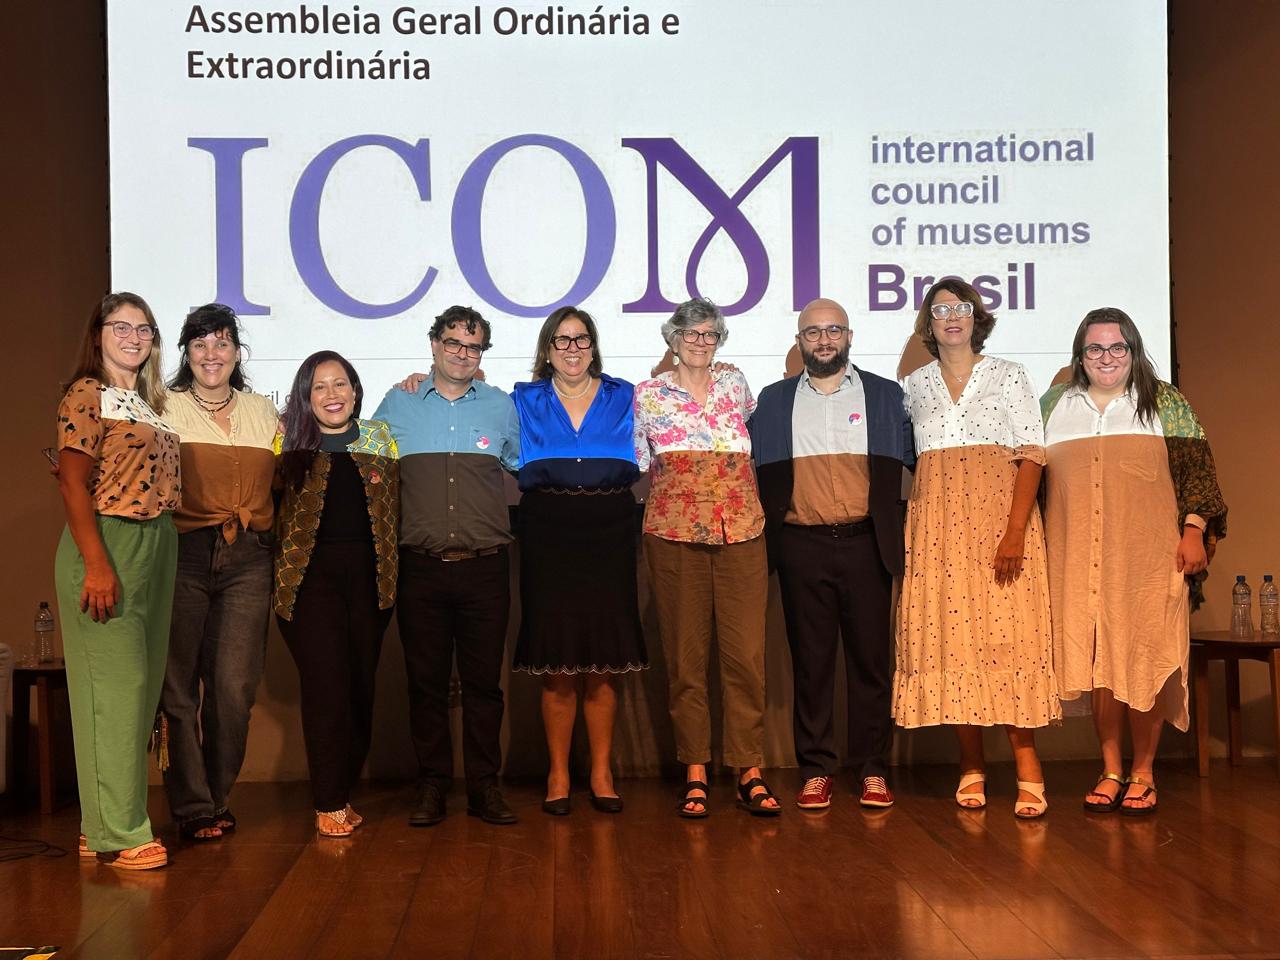 oito pessoas abraçadas em frente à uma projeção no qual está escrito Assembleia Geral Ordinária e Extraordinária ICOM Internation Council of Museums Brasil